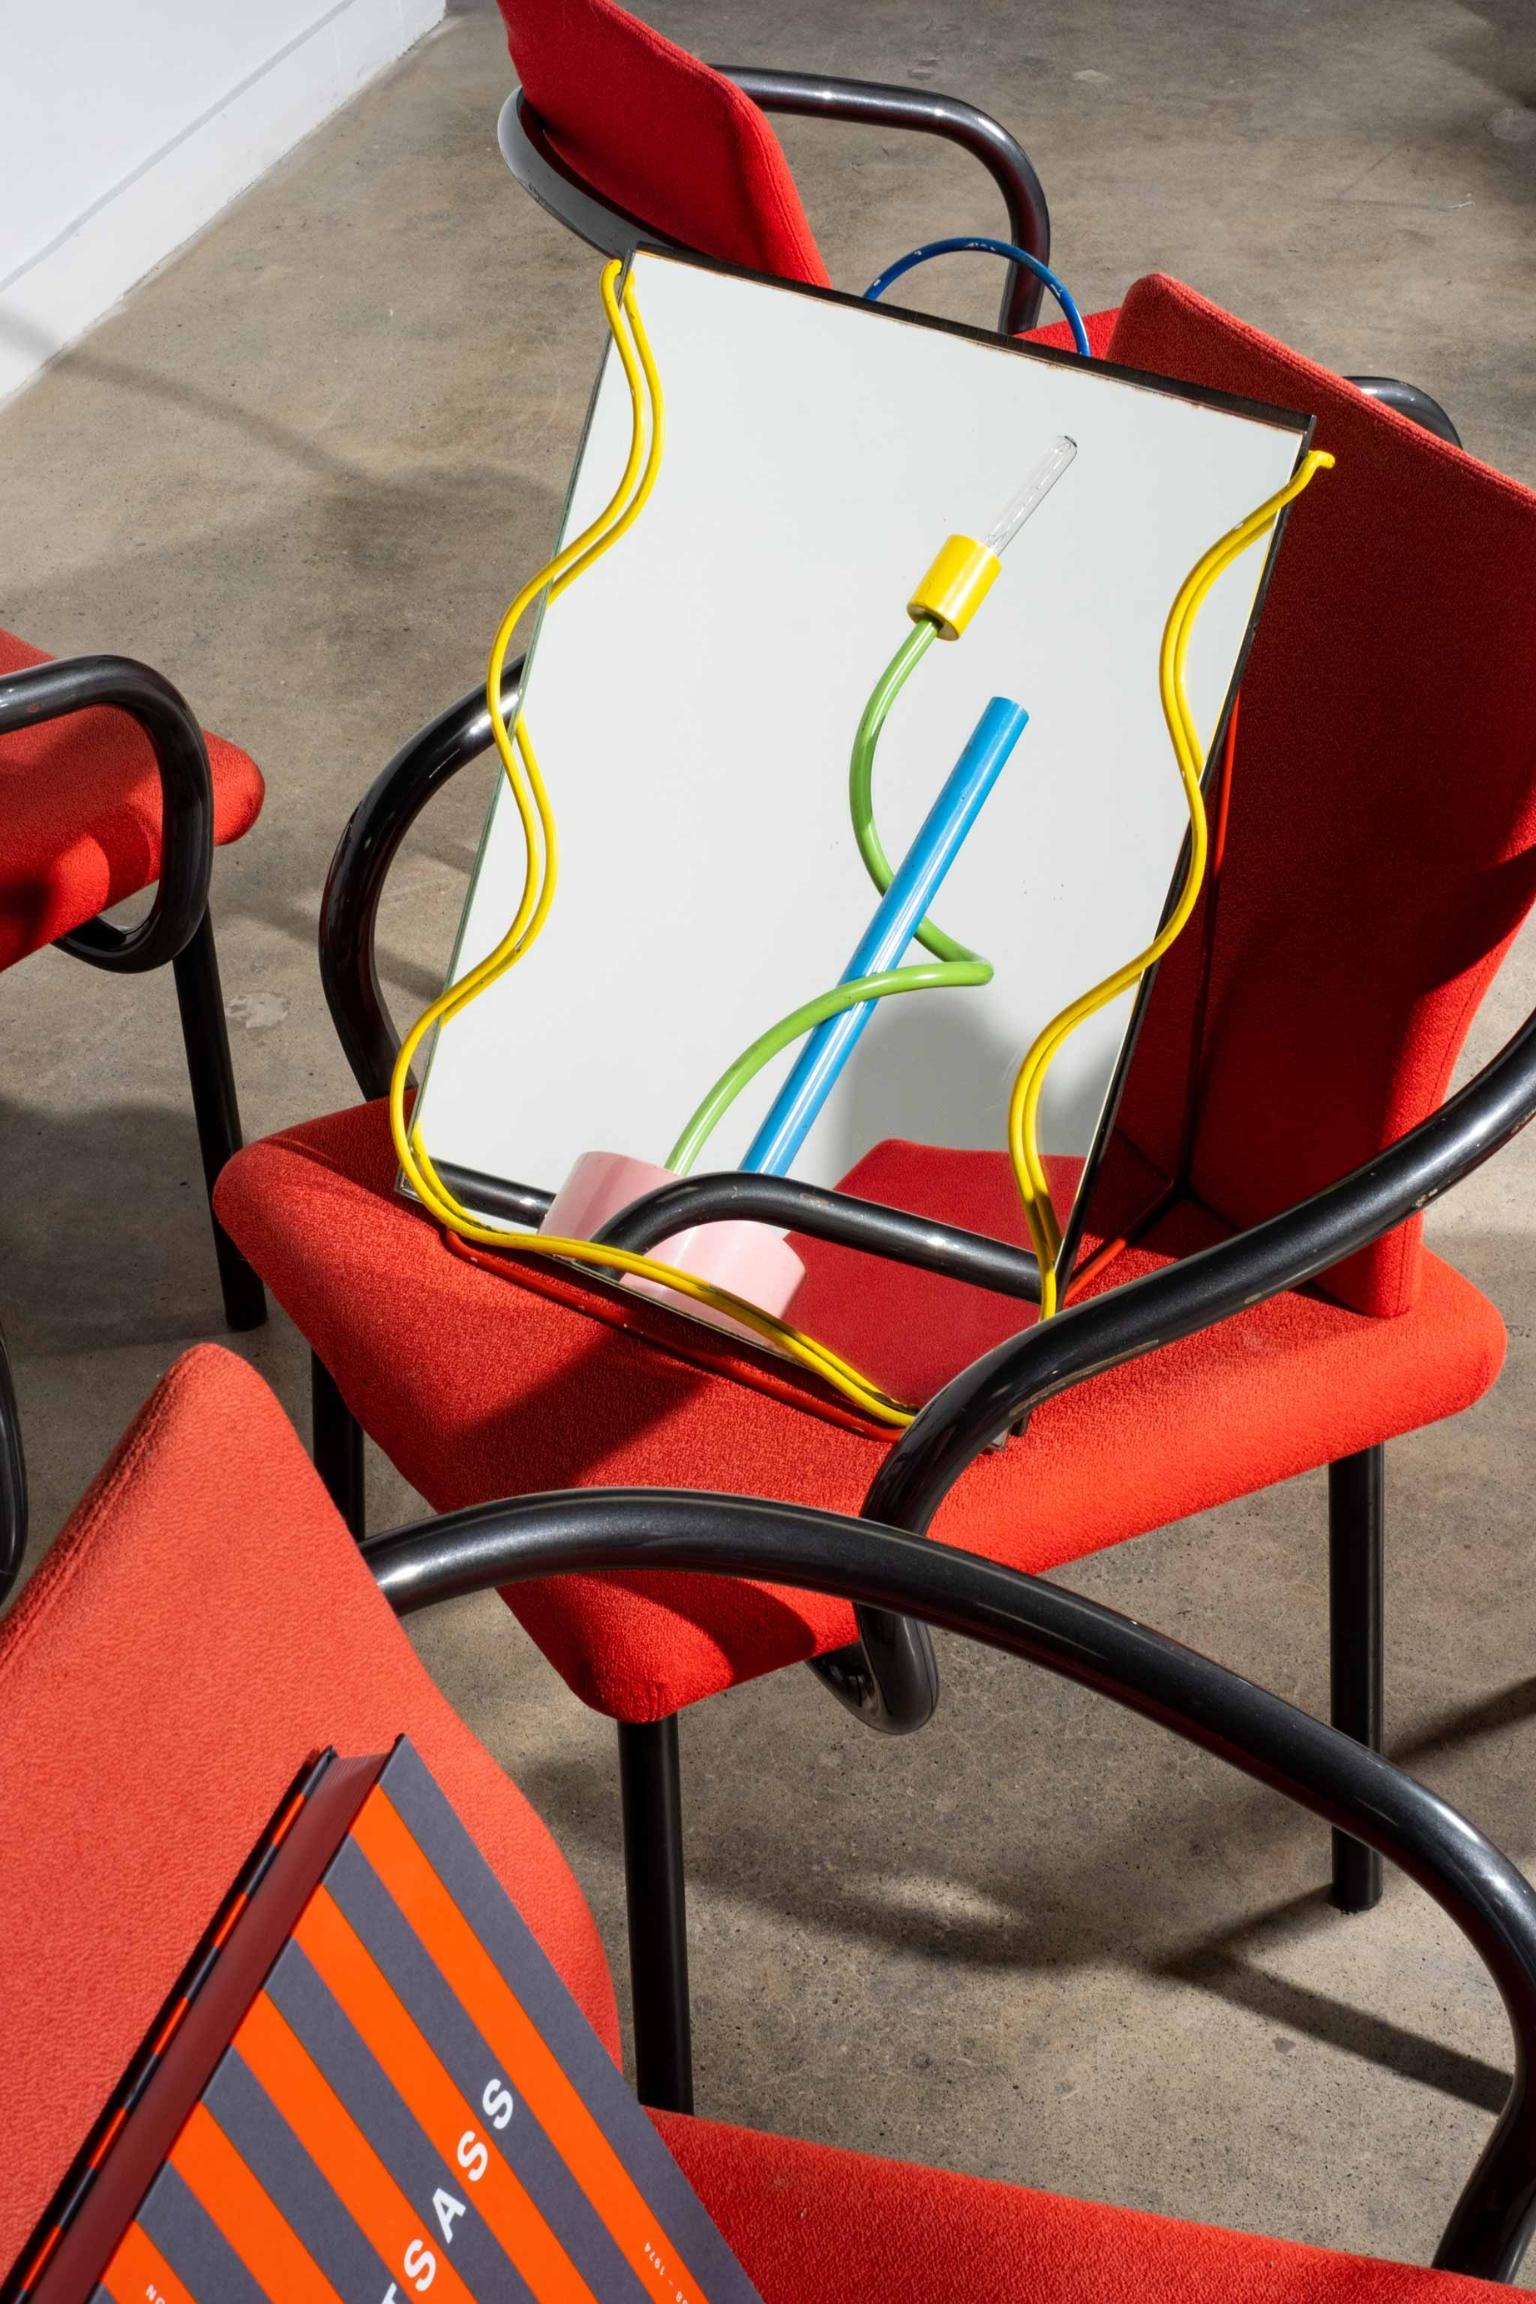 Conçue par l'architecte et designer italien Ettore Sottsass et fabriquée en 1986 par Knoll, la chaise Mandarin est un modèle très fonctionnel doté d'un accoudoir monobloc qui s'enroule sous et autour de l'assise et du dossier. Ses bras sculpturaux